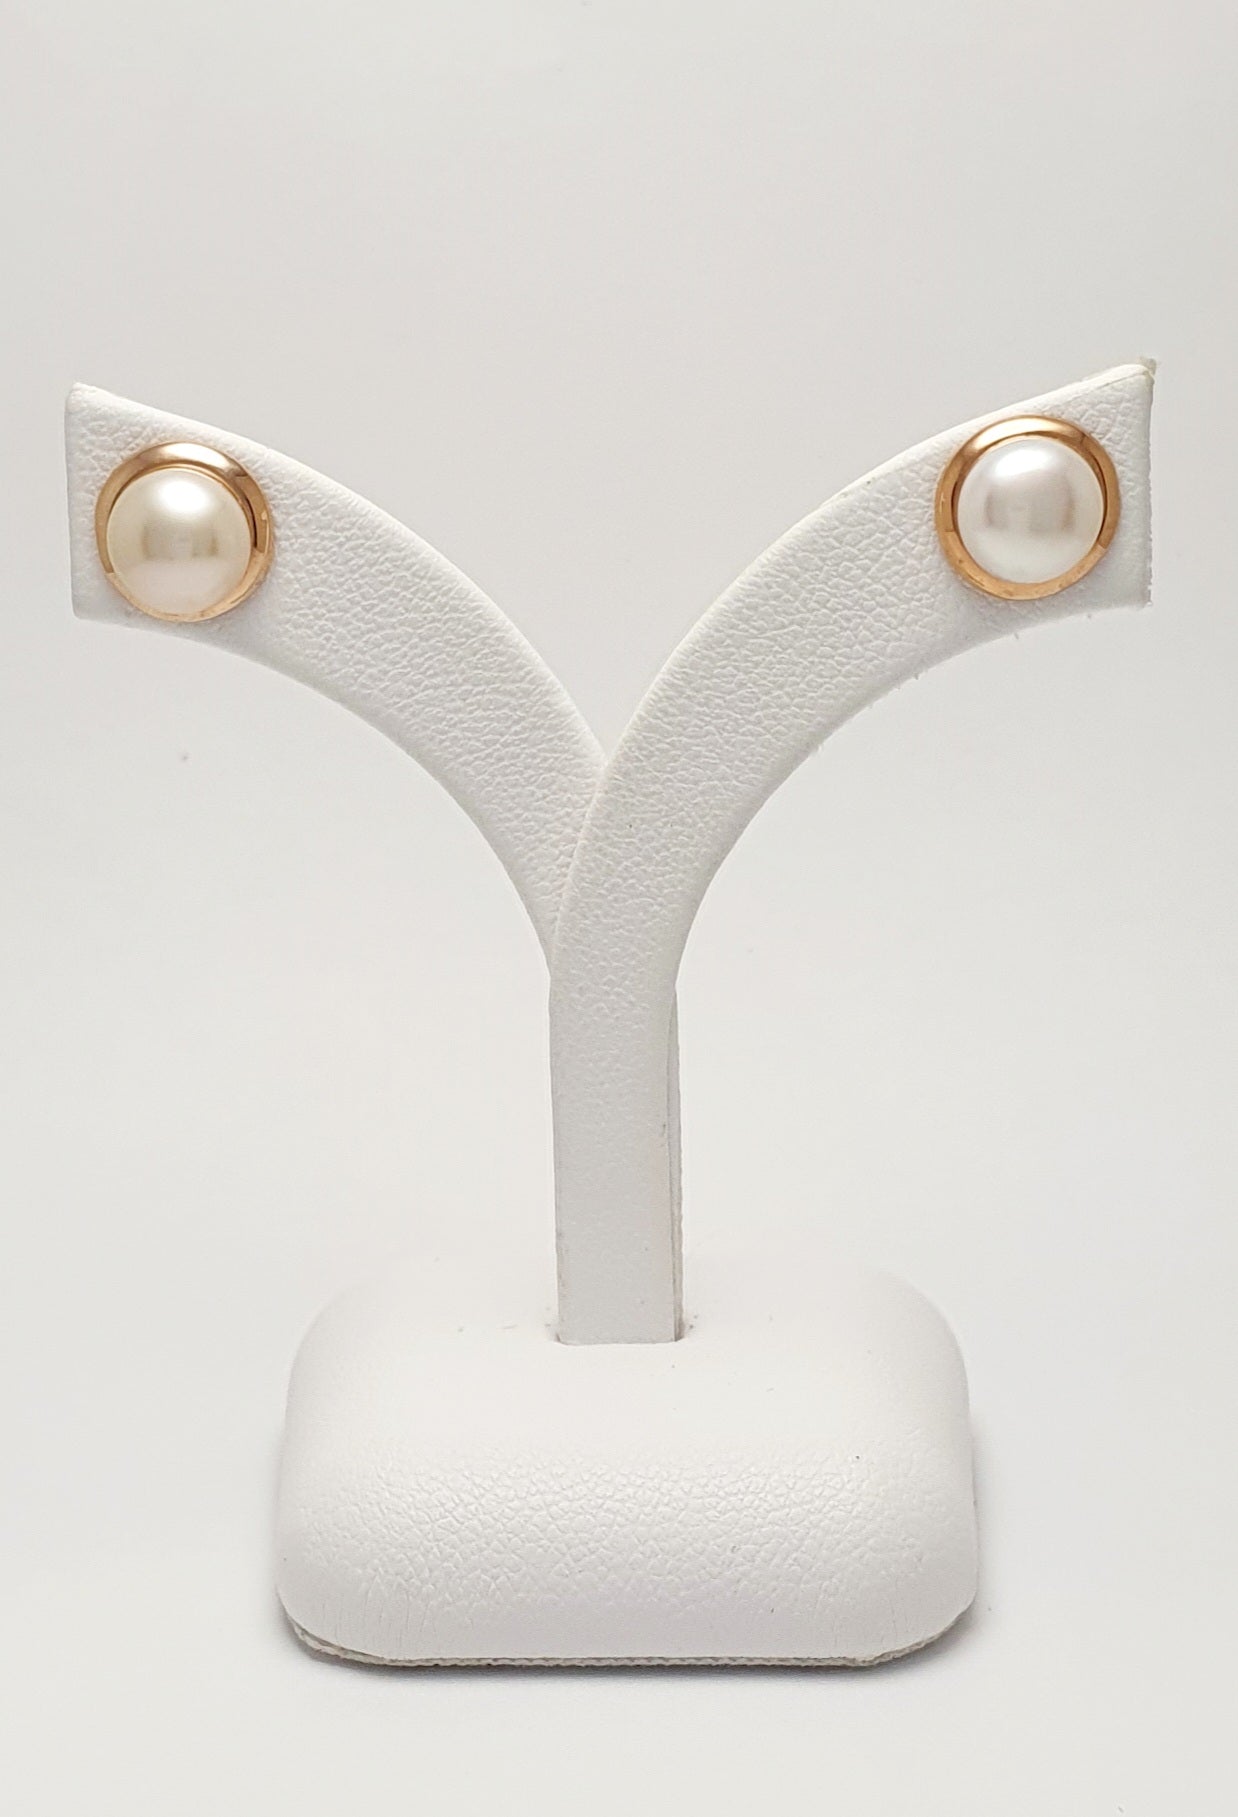 Pearls & Rose Gold earrings